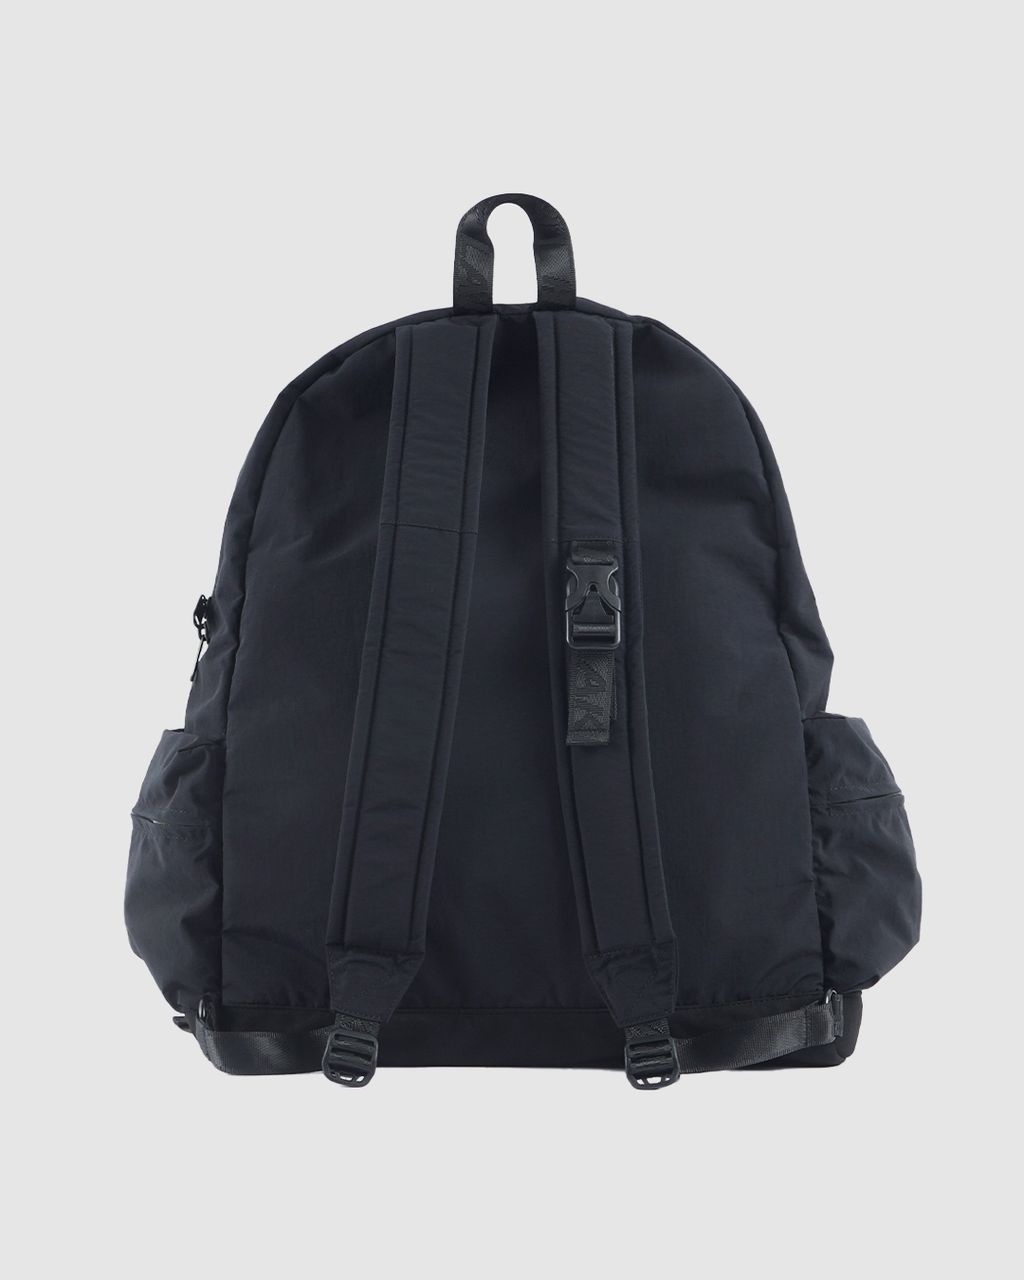 Backpack_Black_2